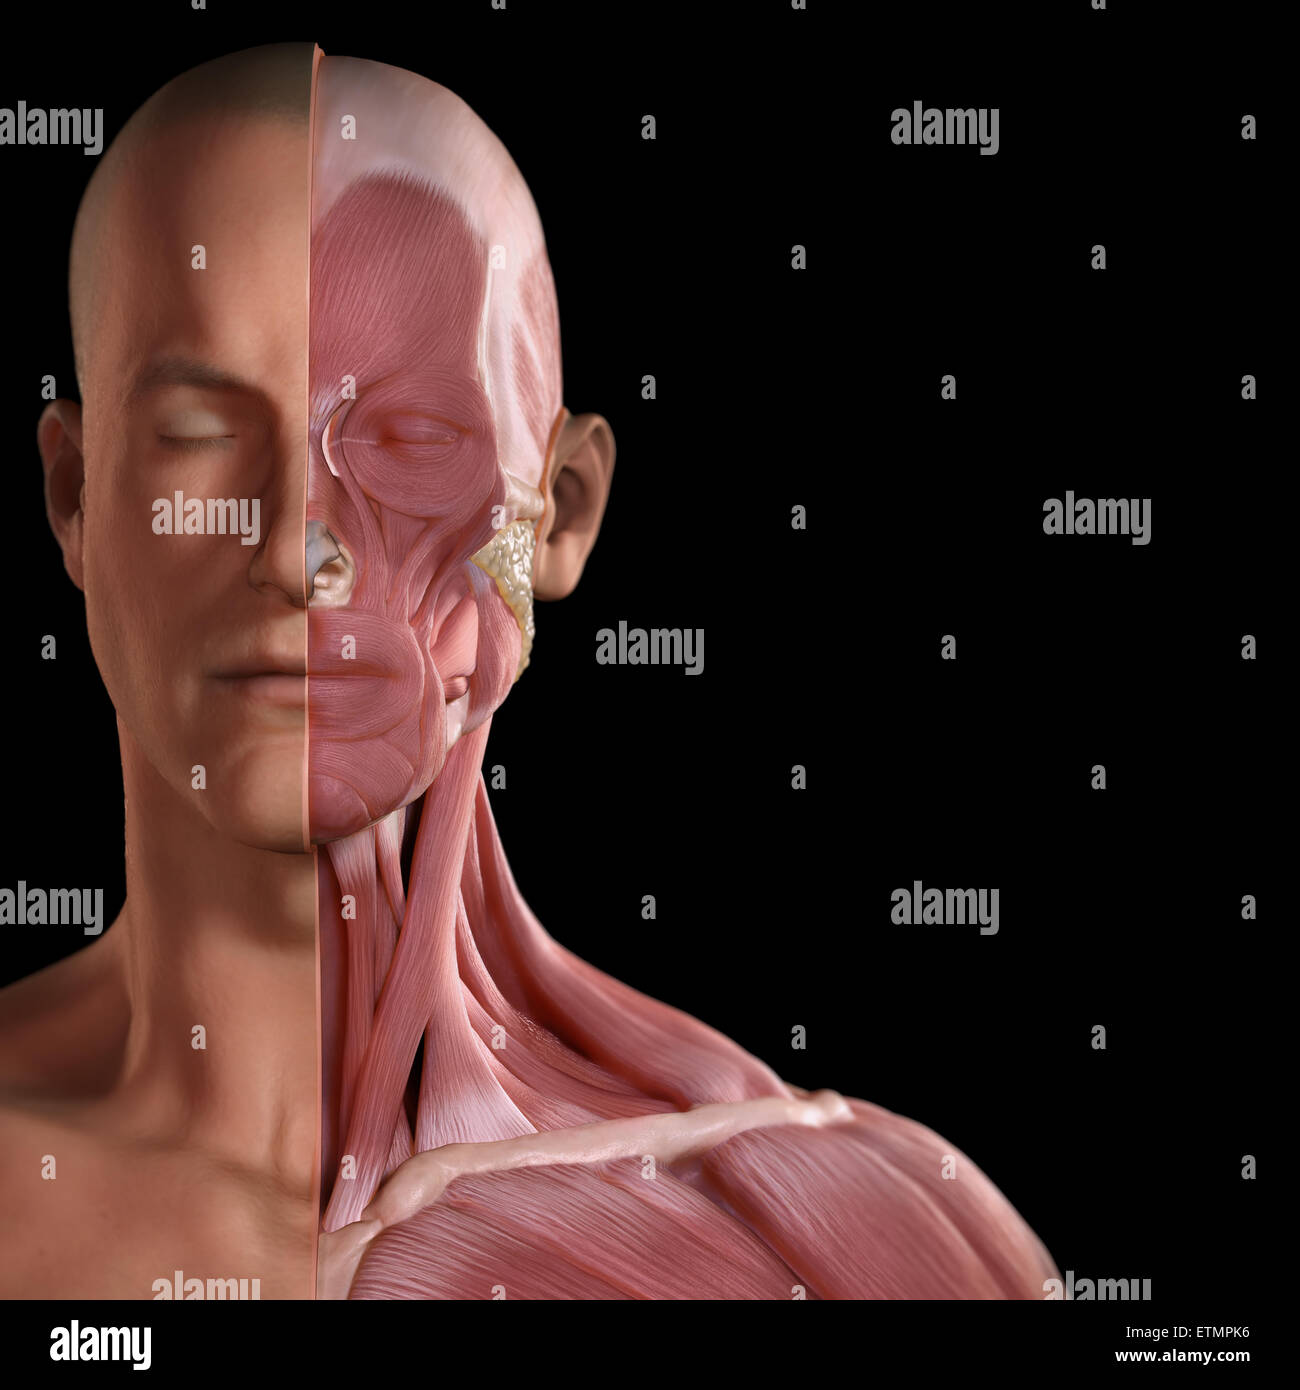 Imagen conceptual de la cara con los músculos expuestos en un lado. Foto de stock